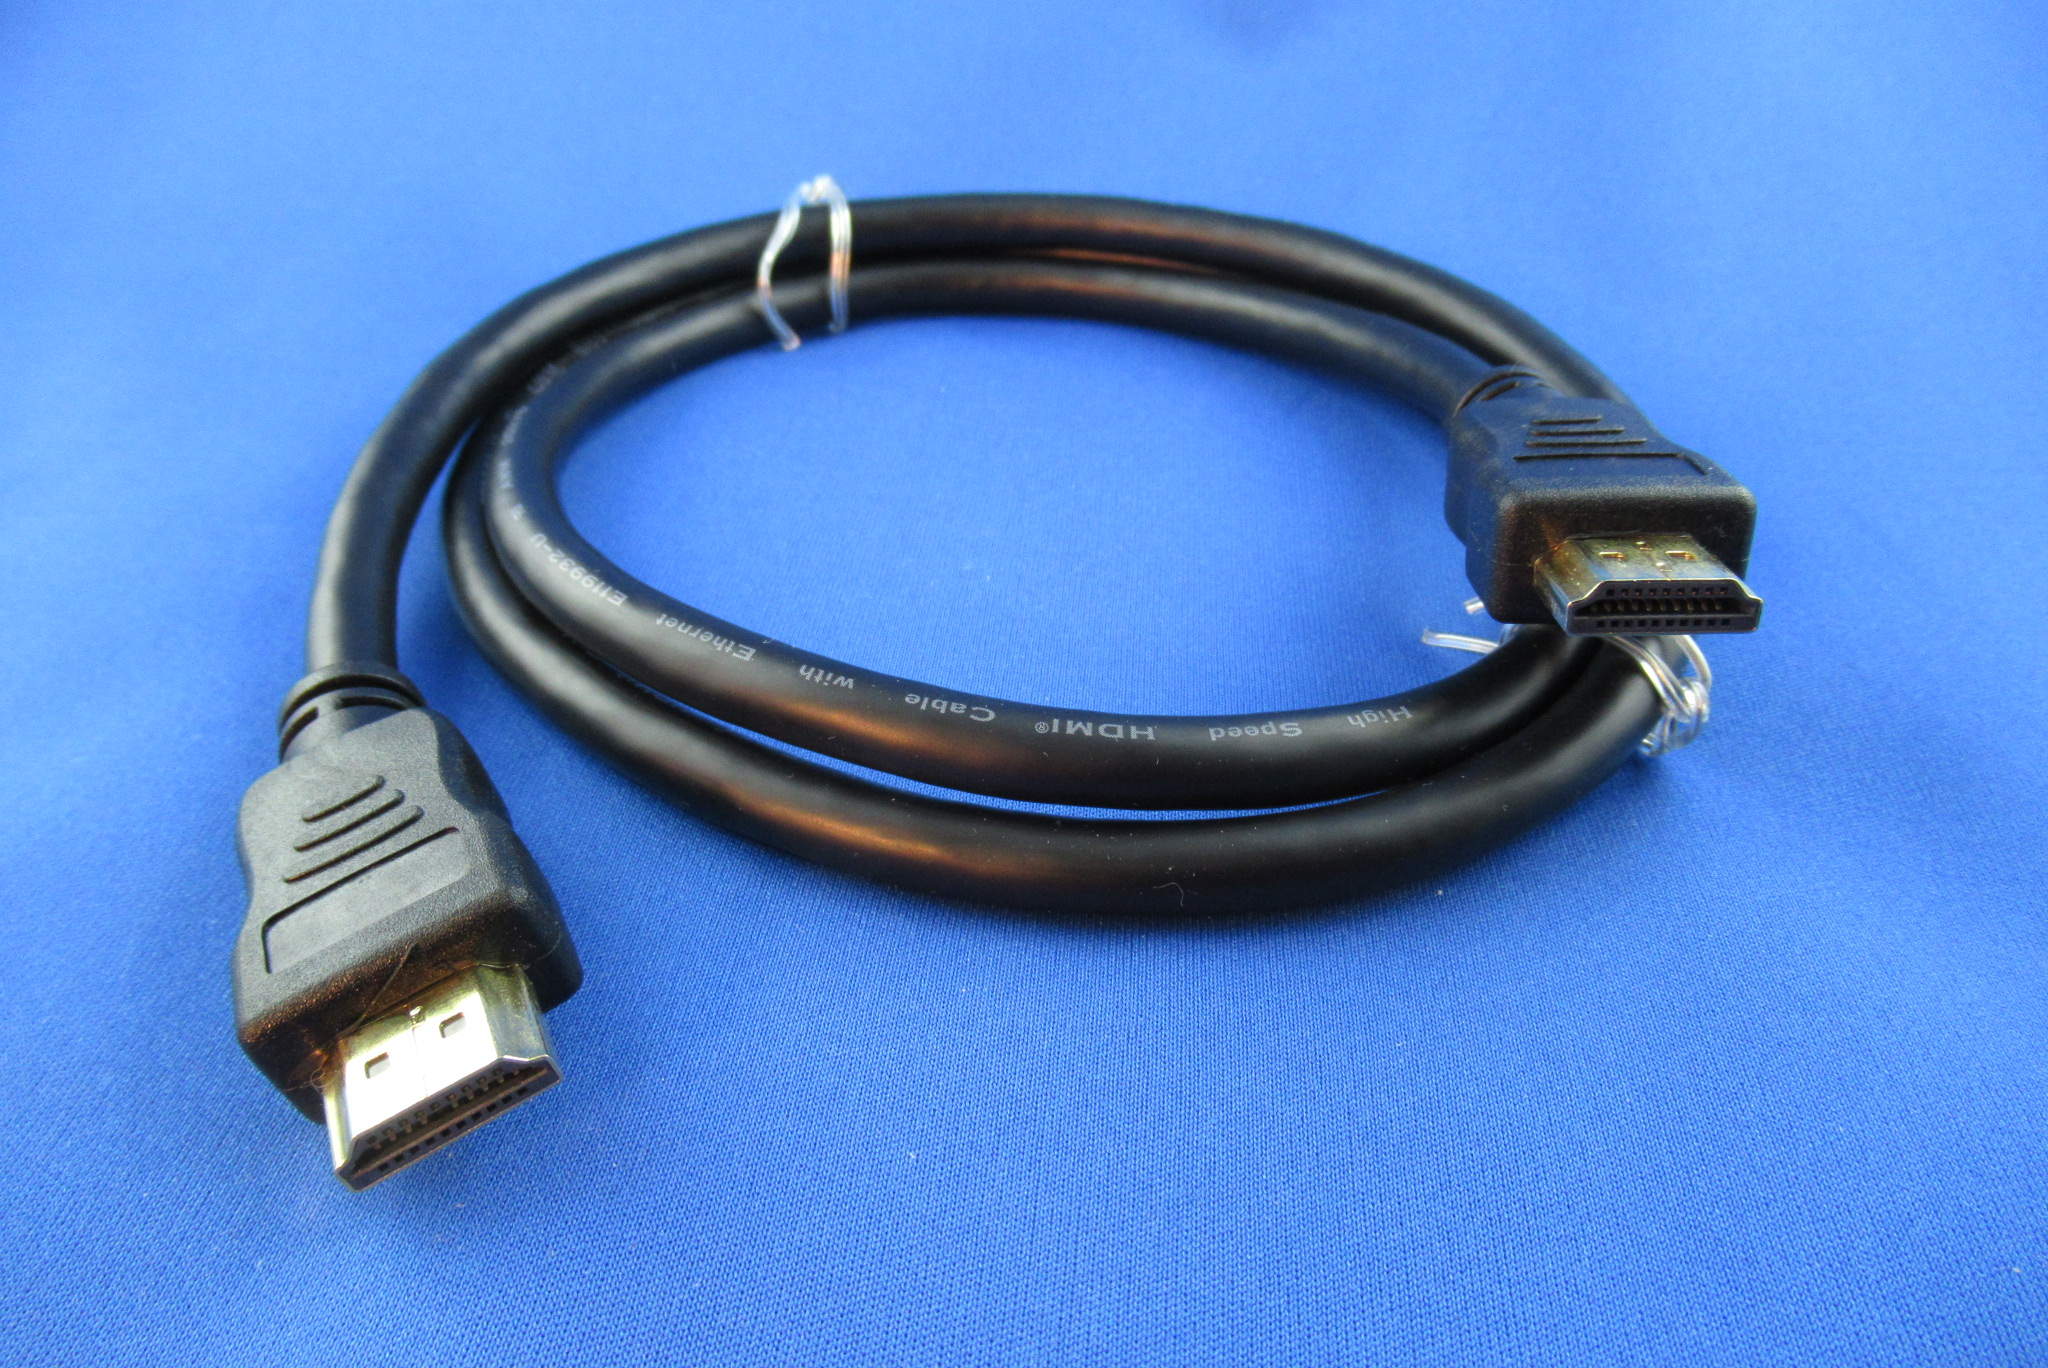 HDMI-Kabel Stecker/Stecker 1,0m Gold HDMI 2.0 schwarz INTOS 17501P